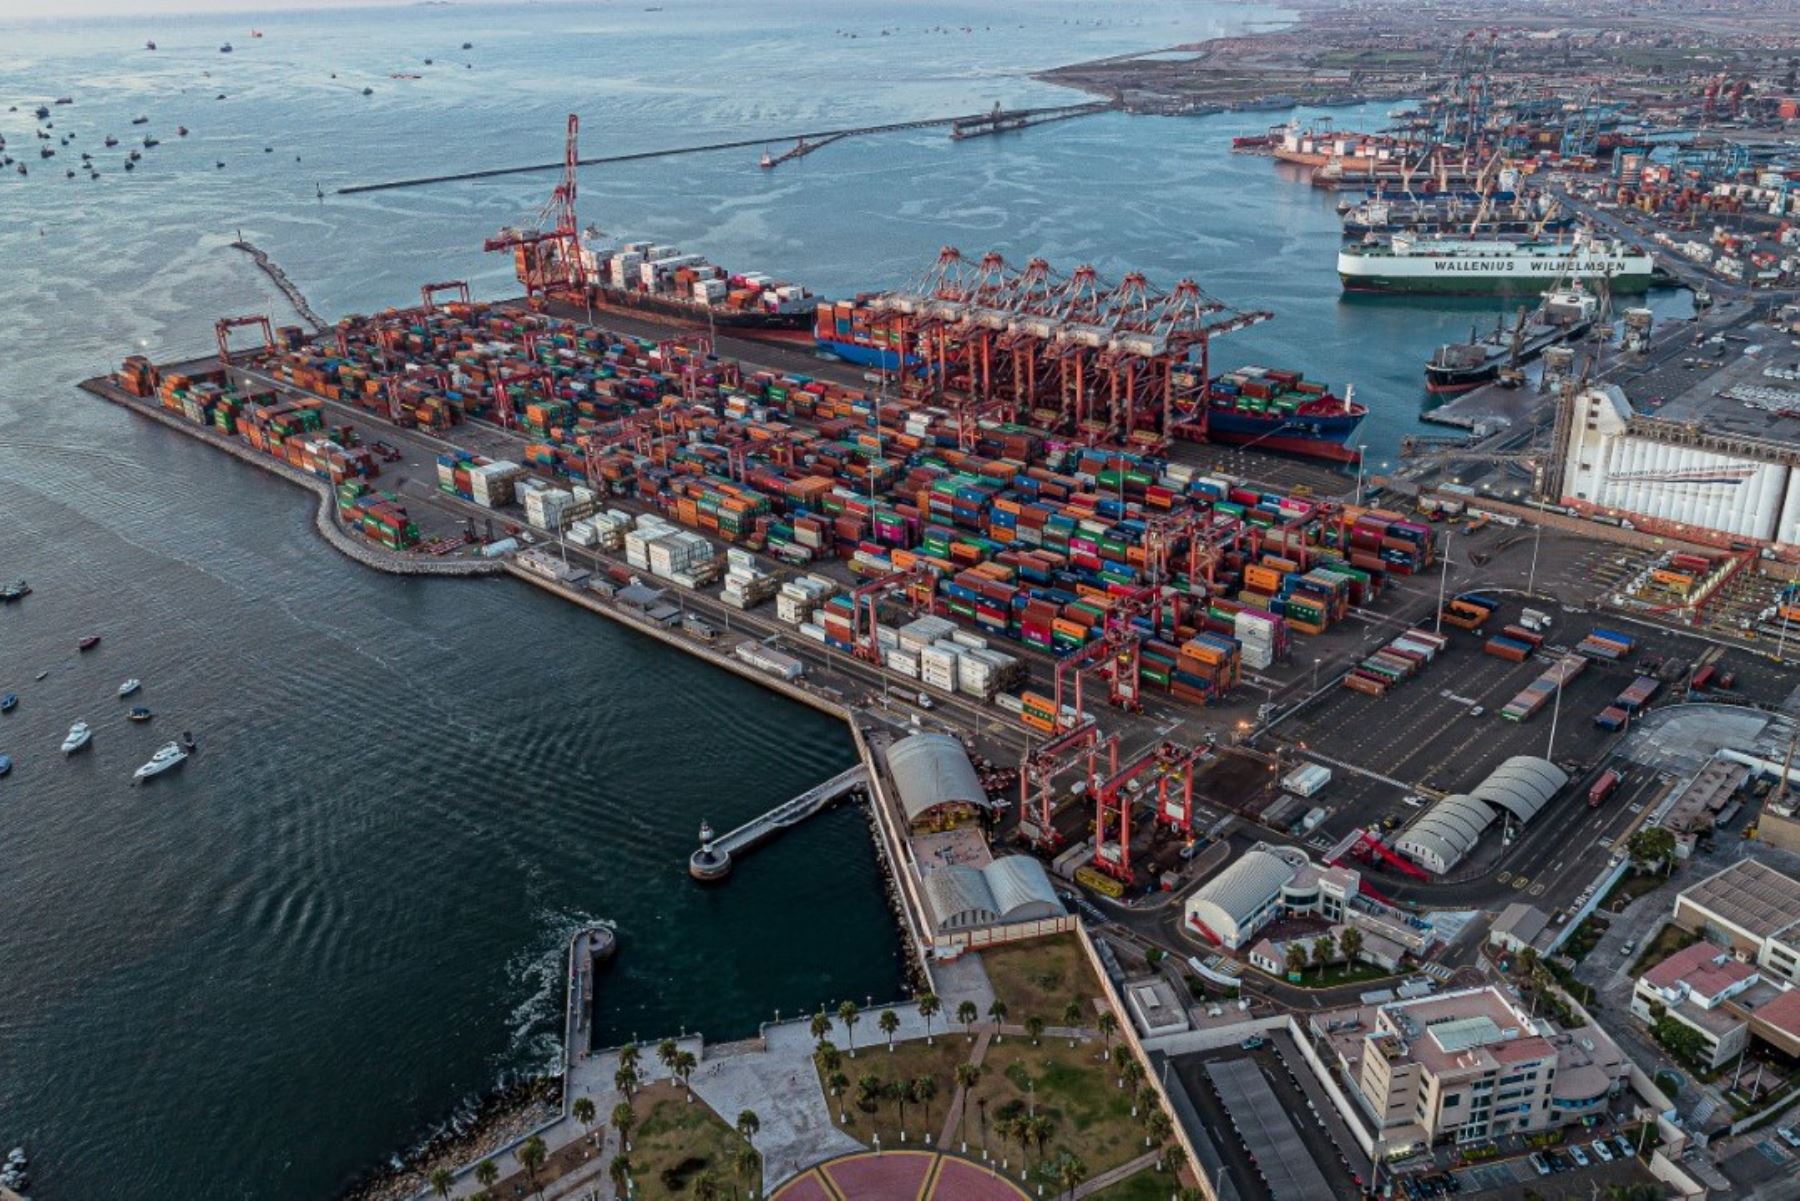 Vista panorámica del puerto del Callao. Foto: ANDINA/DP World Callao.